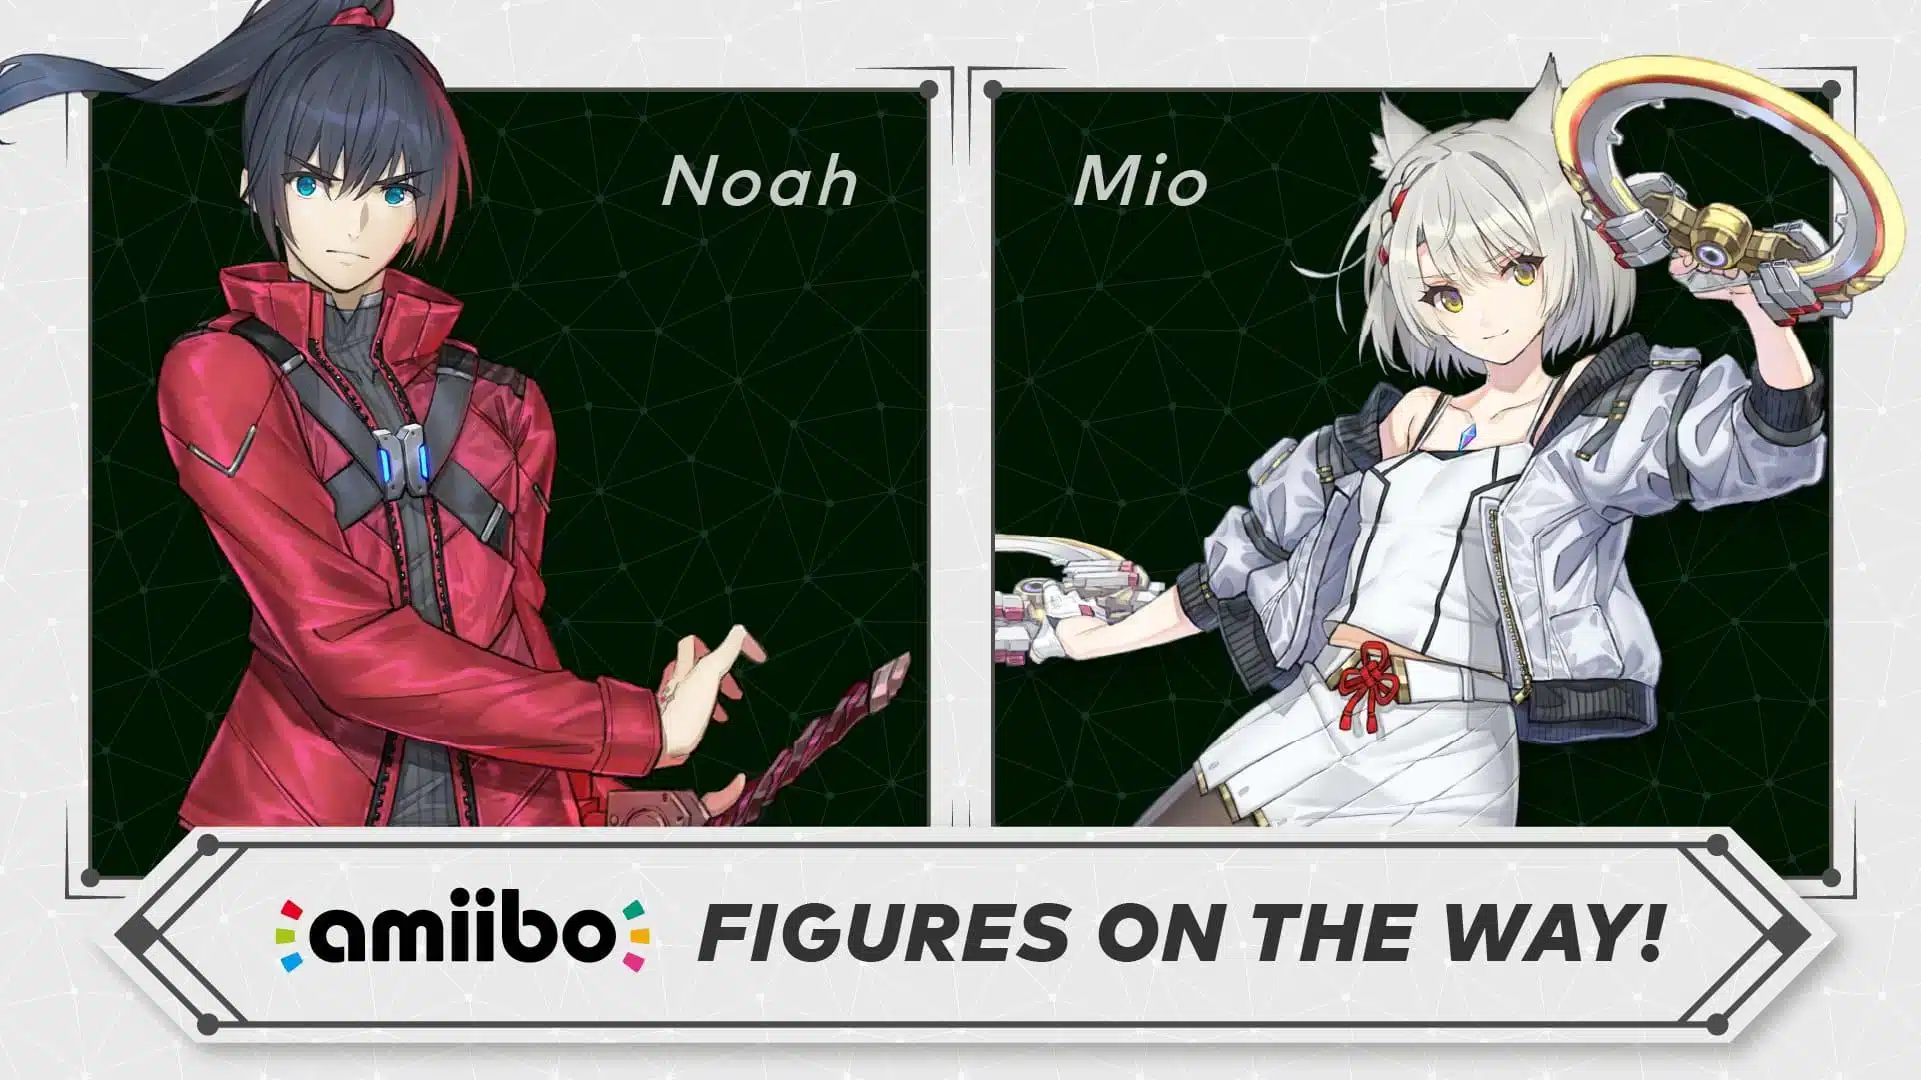 Noah Mio Xenoblade Chronicles 3 Amiibo